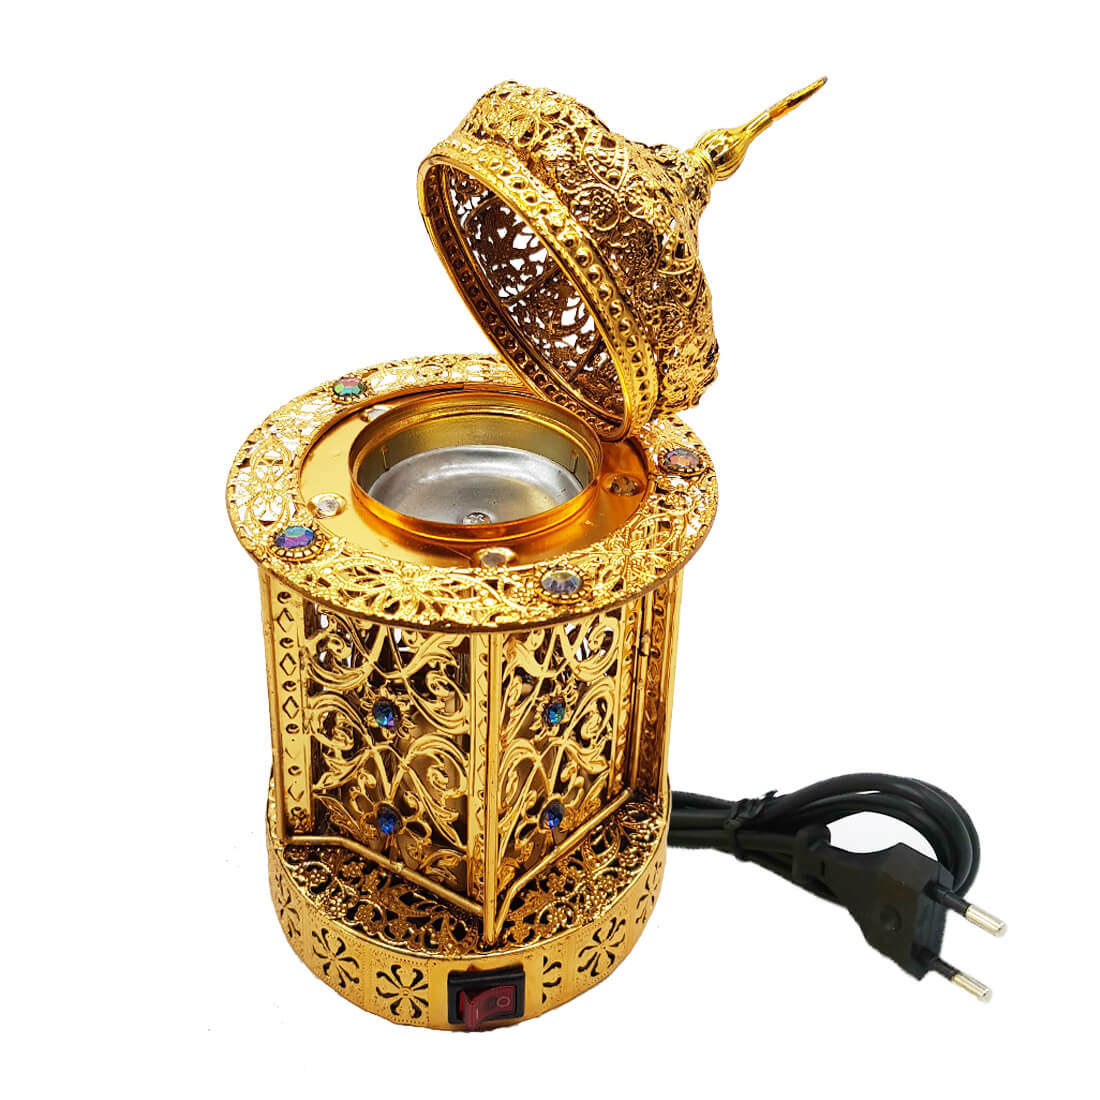 Electrical Bakhoor Burner & 2 Fragrance Paste - Golden